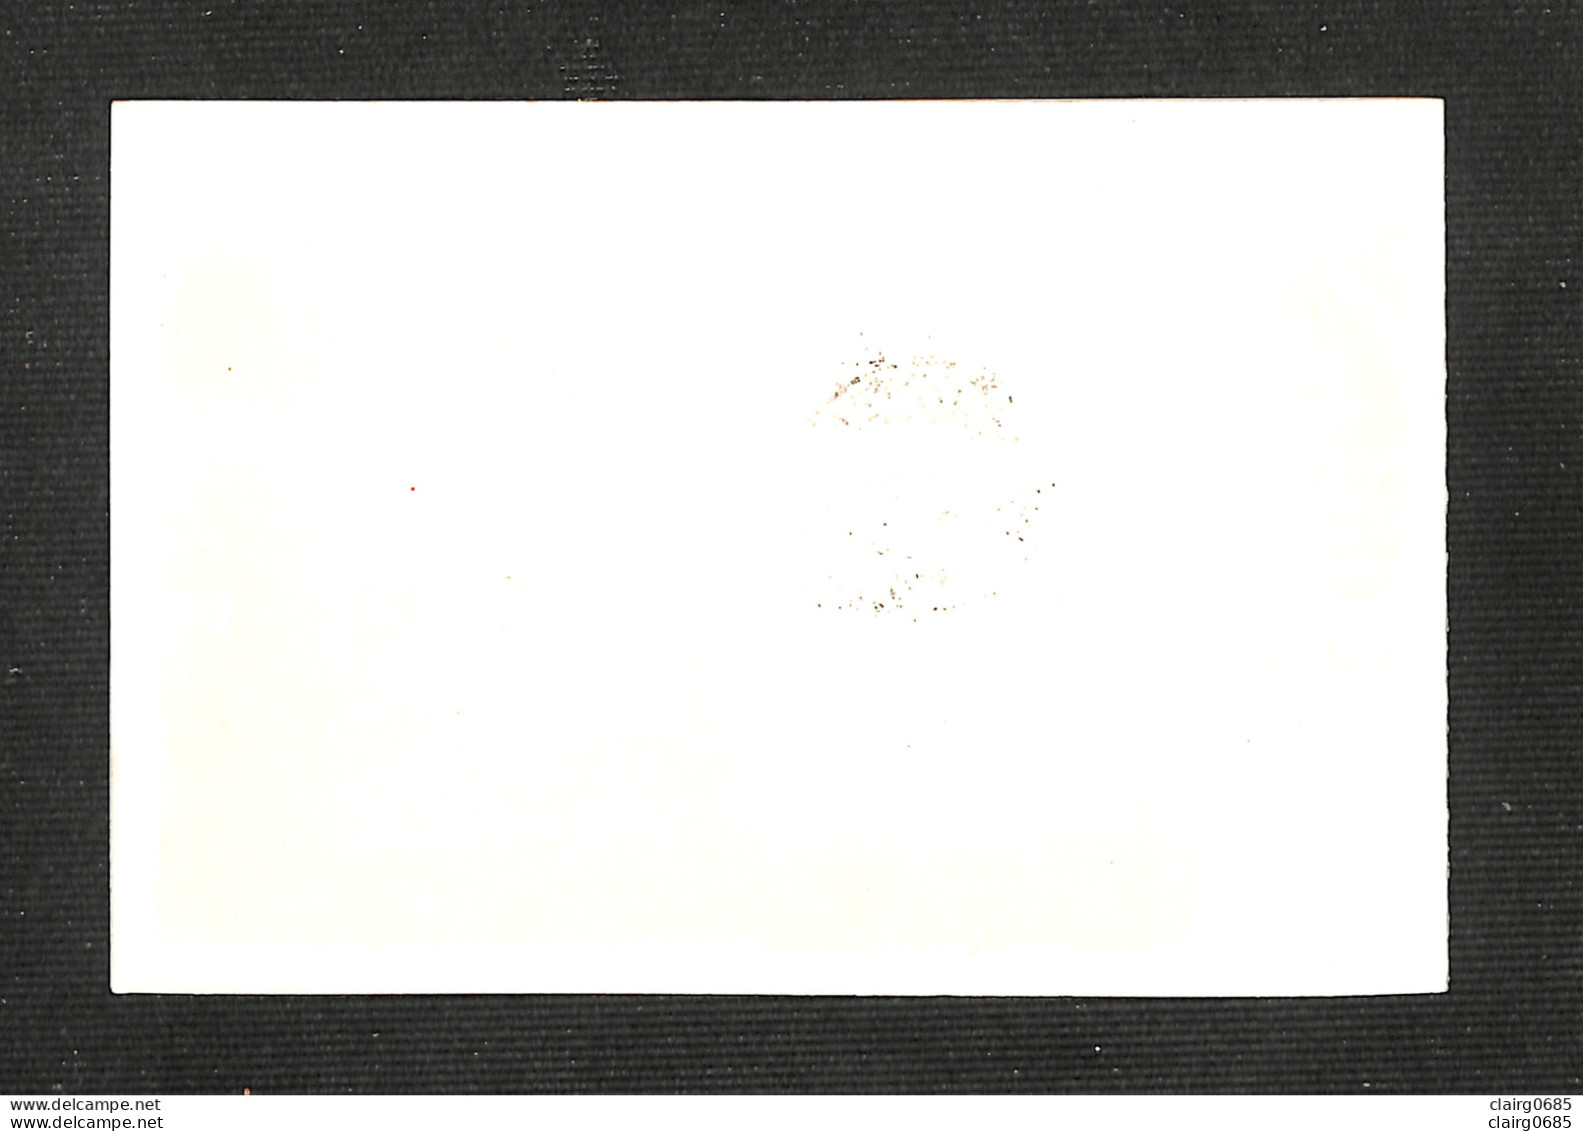 PAYS-BAS - NEDERLAND - Carte MAXIMUM 1960 - HINDELOOPEN - Cartoline Maximum